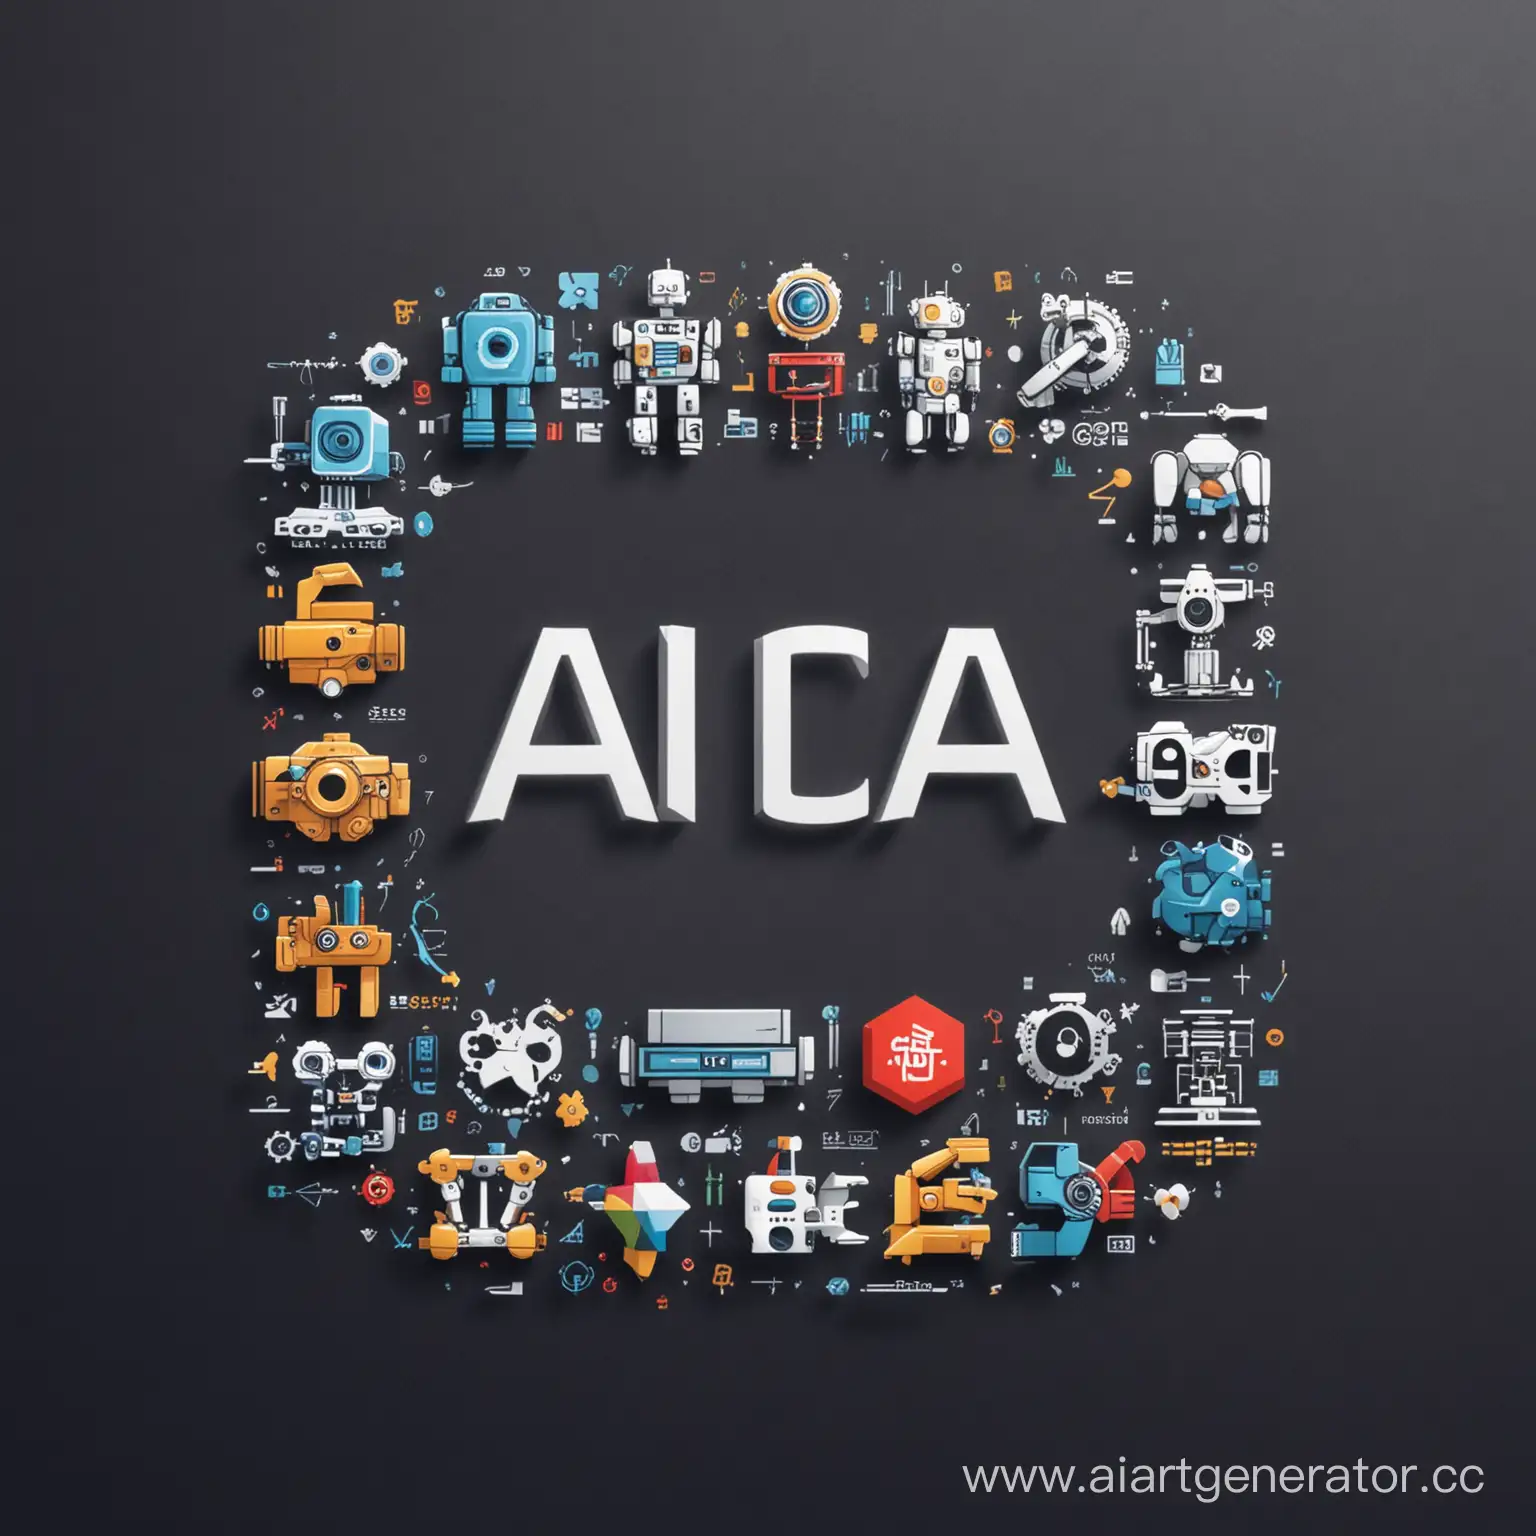 Логотип, где каждая буква "AICAN" представлена в виде различных иконок, символизирующих разнообразные области и технологии, такие как робототехника, программирование, искусственный интеллект и т. д., чтобы подчеркнуть широкий спектр карьерных возможностей в мире хайтек.
